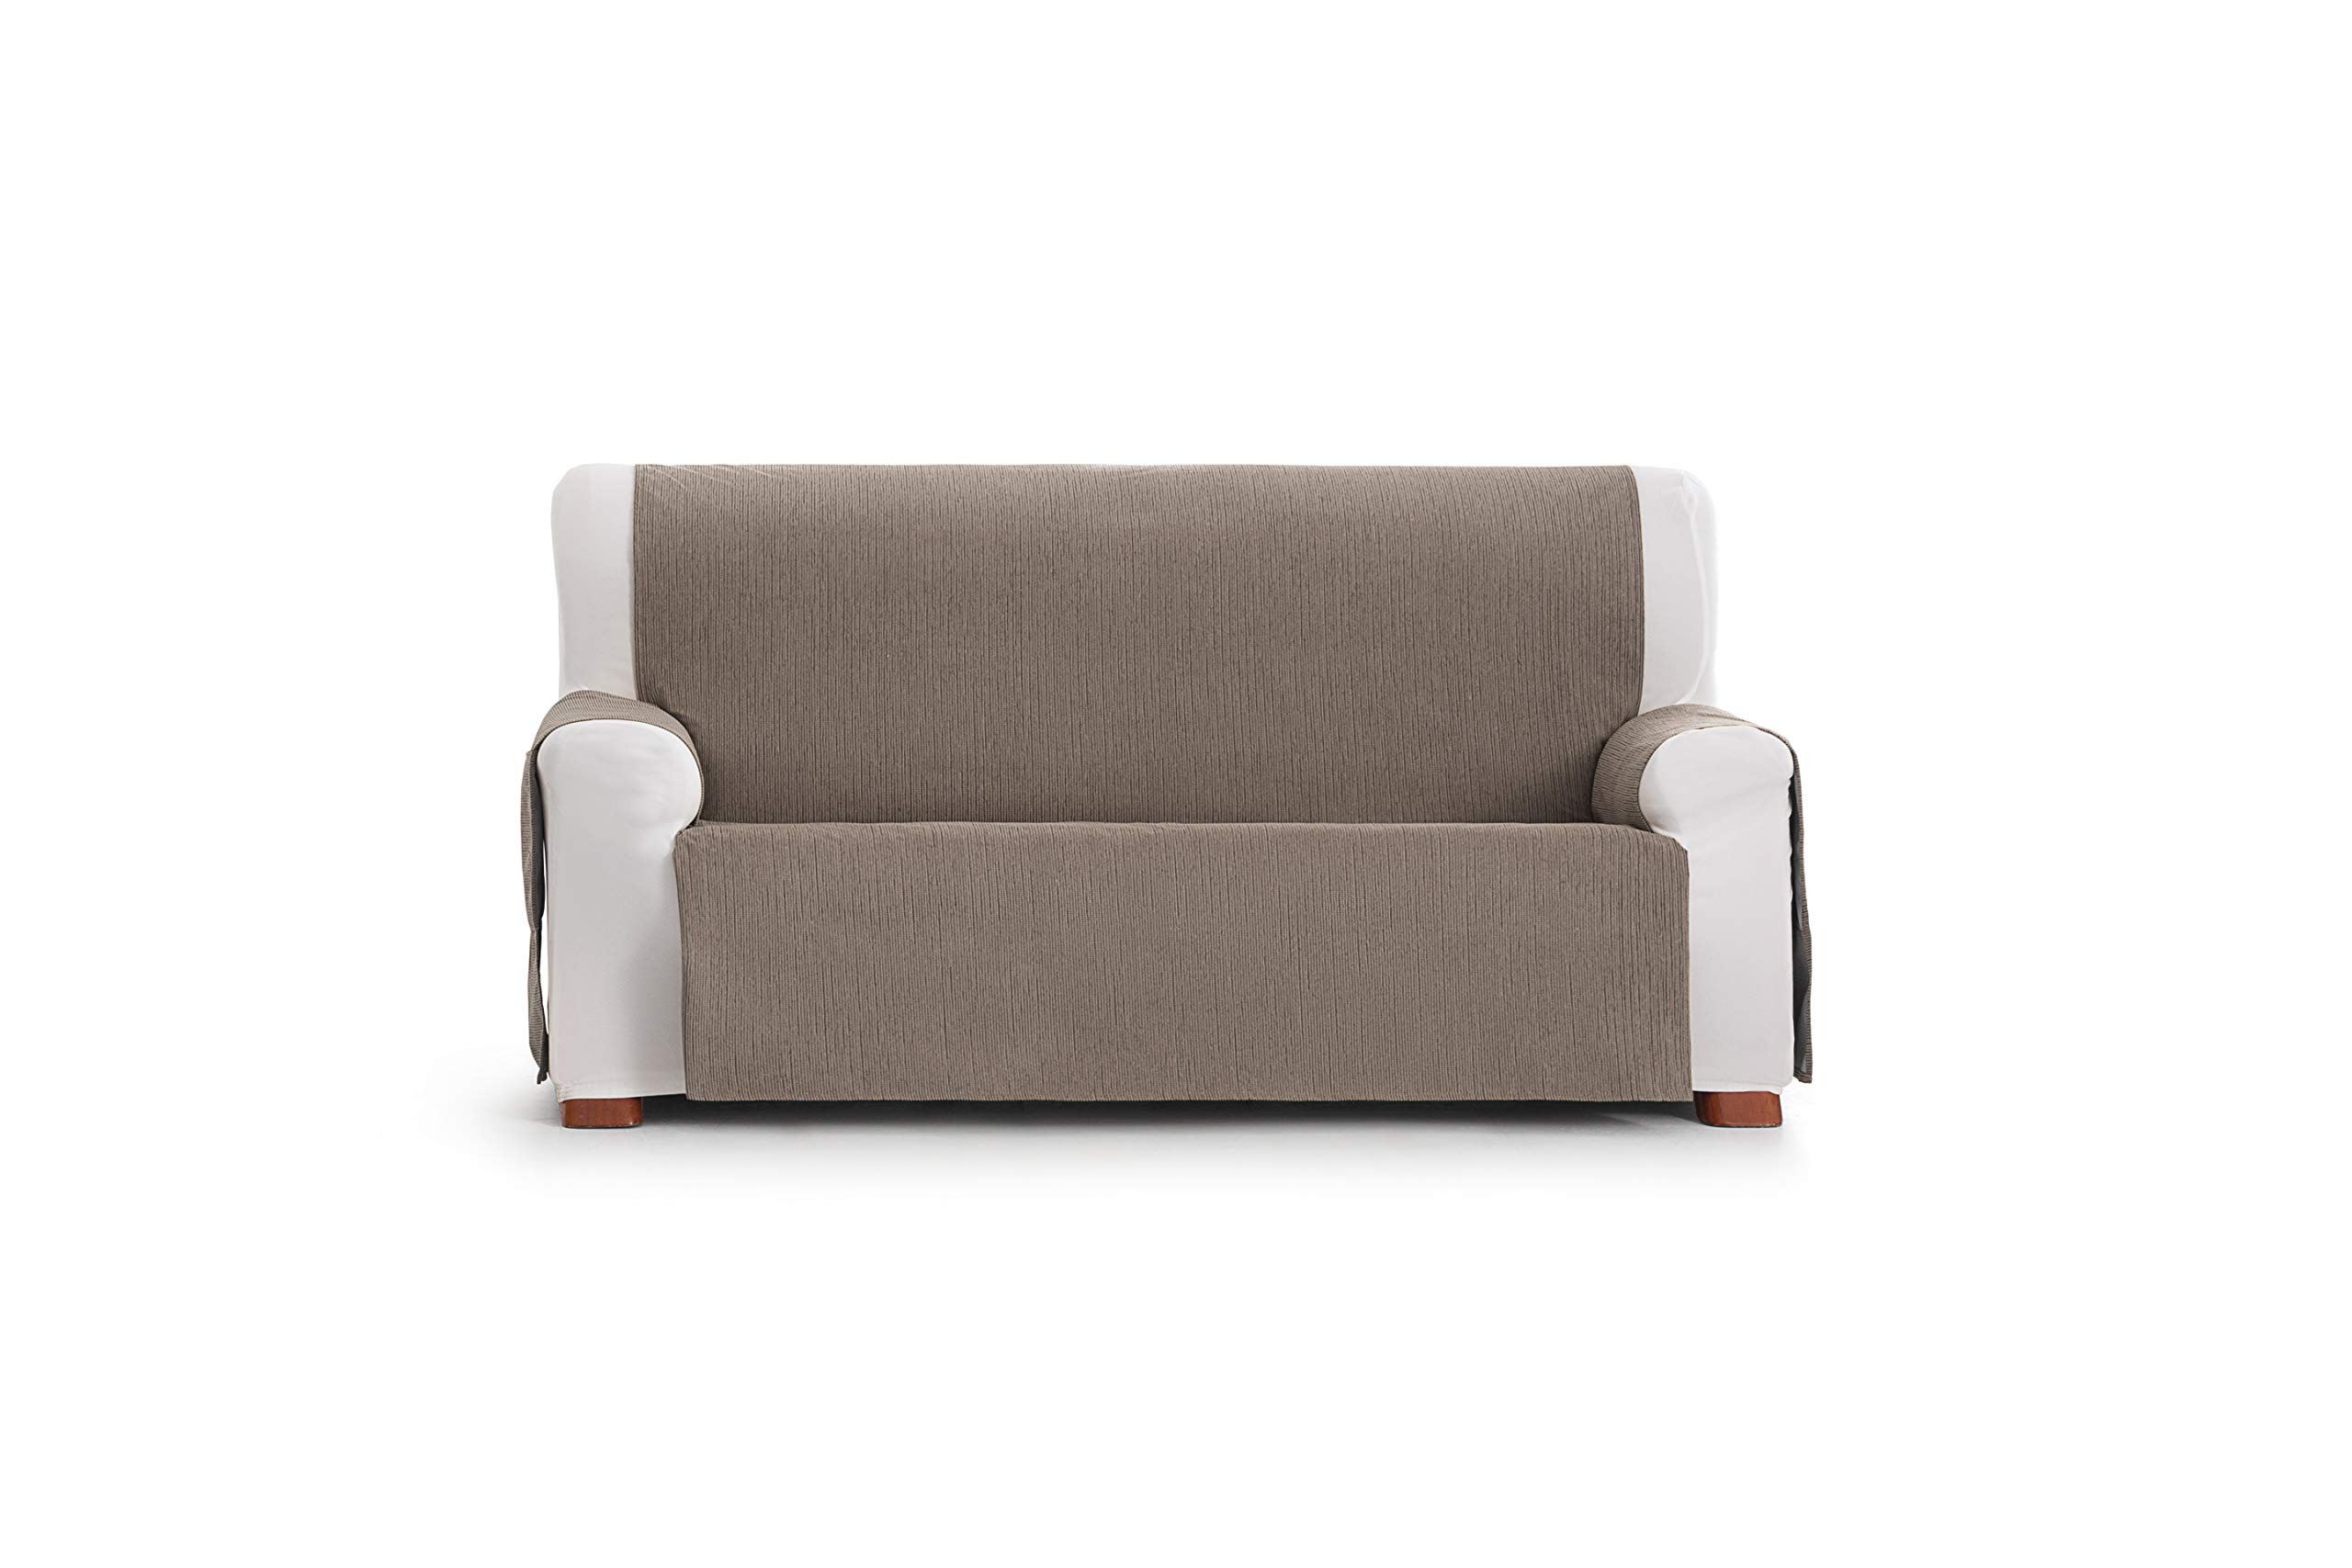 Eysa Loira Protect wasserdichte und atmungsaktive Sofa überwurf, 65% Polyester 35% Baumwolle, braun, 150 cm